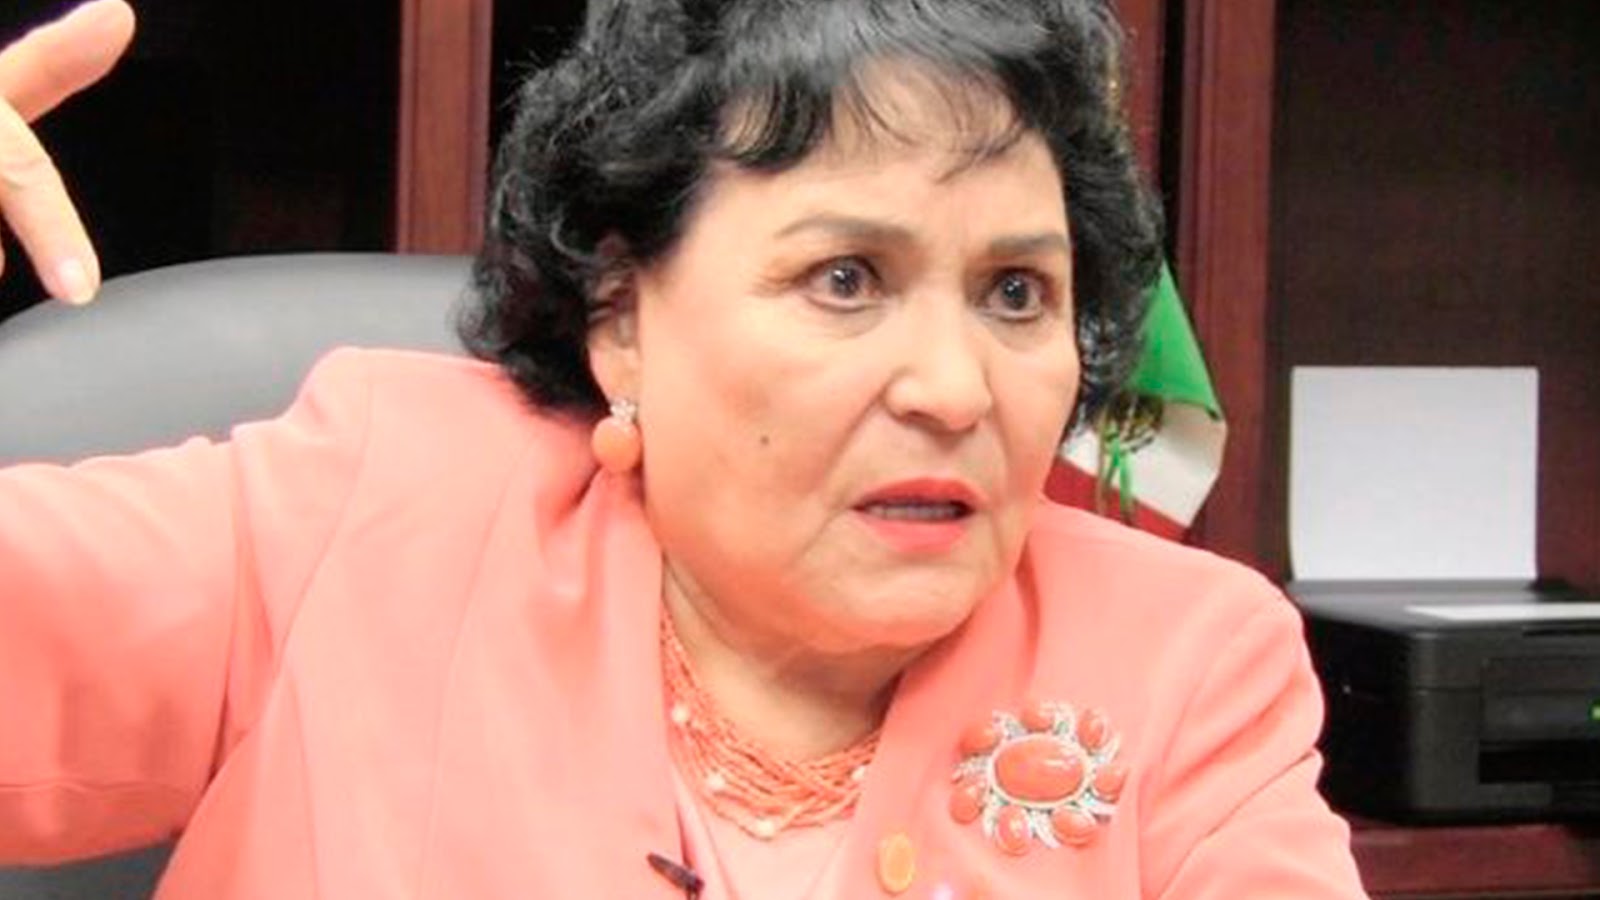 Carmen Salinas se le ocurrió propone duplicar salarios de diputados: “así no se notará cuando nos los bajen”